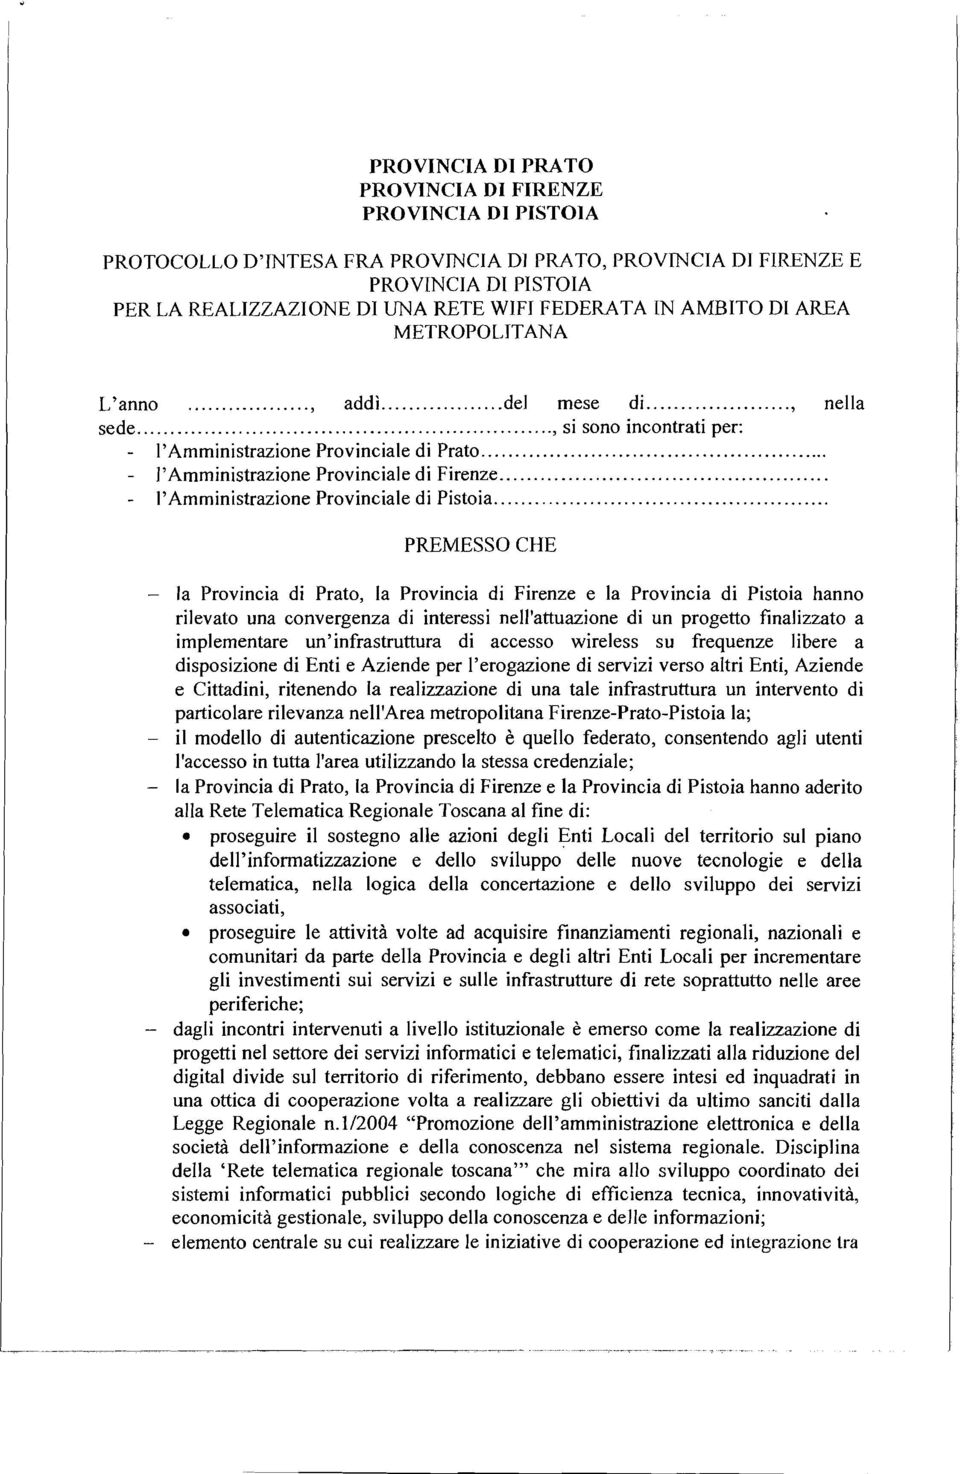 .... - l'amministrazione Provinciale di Pistoia.